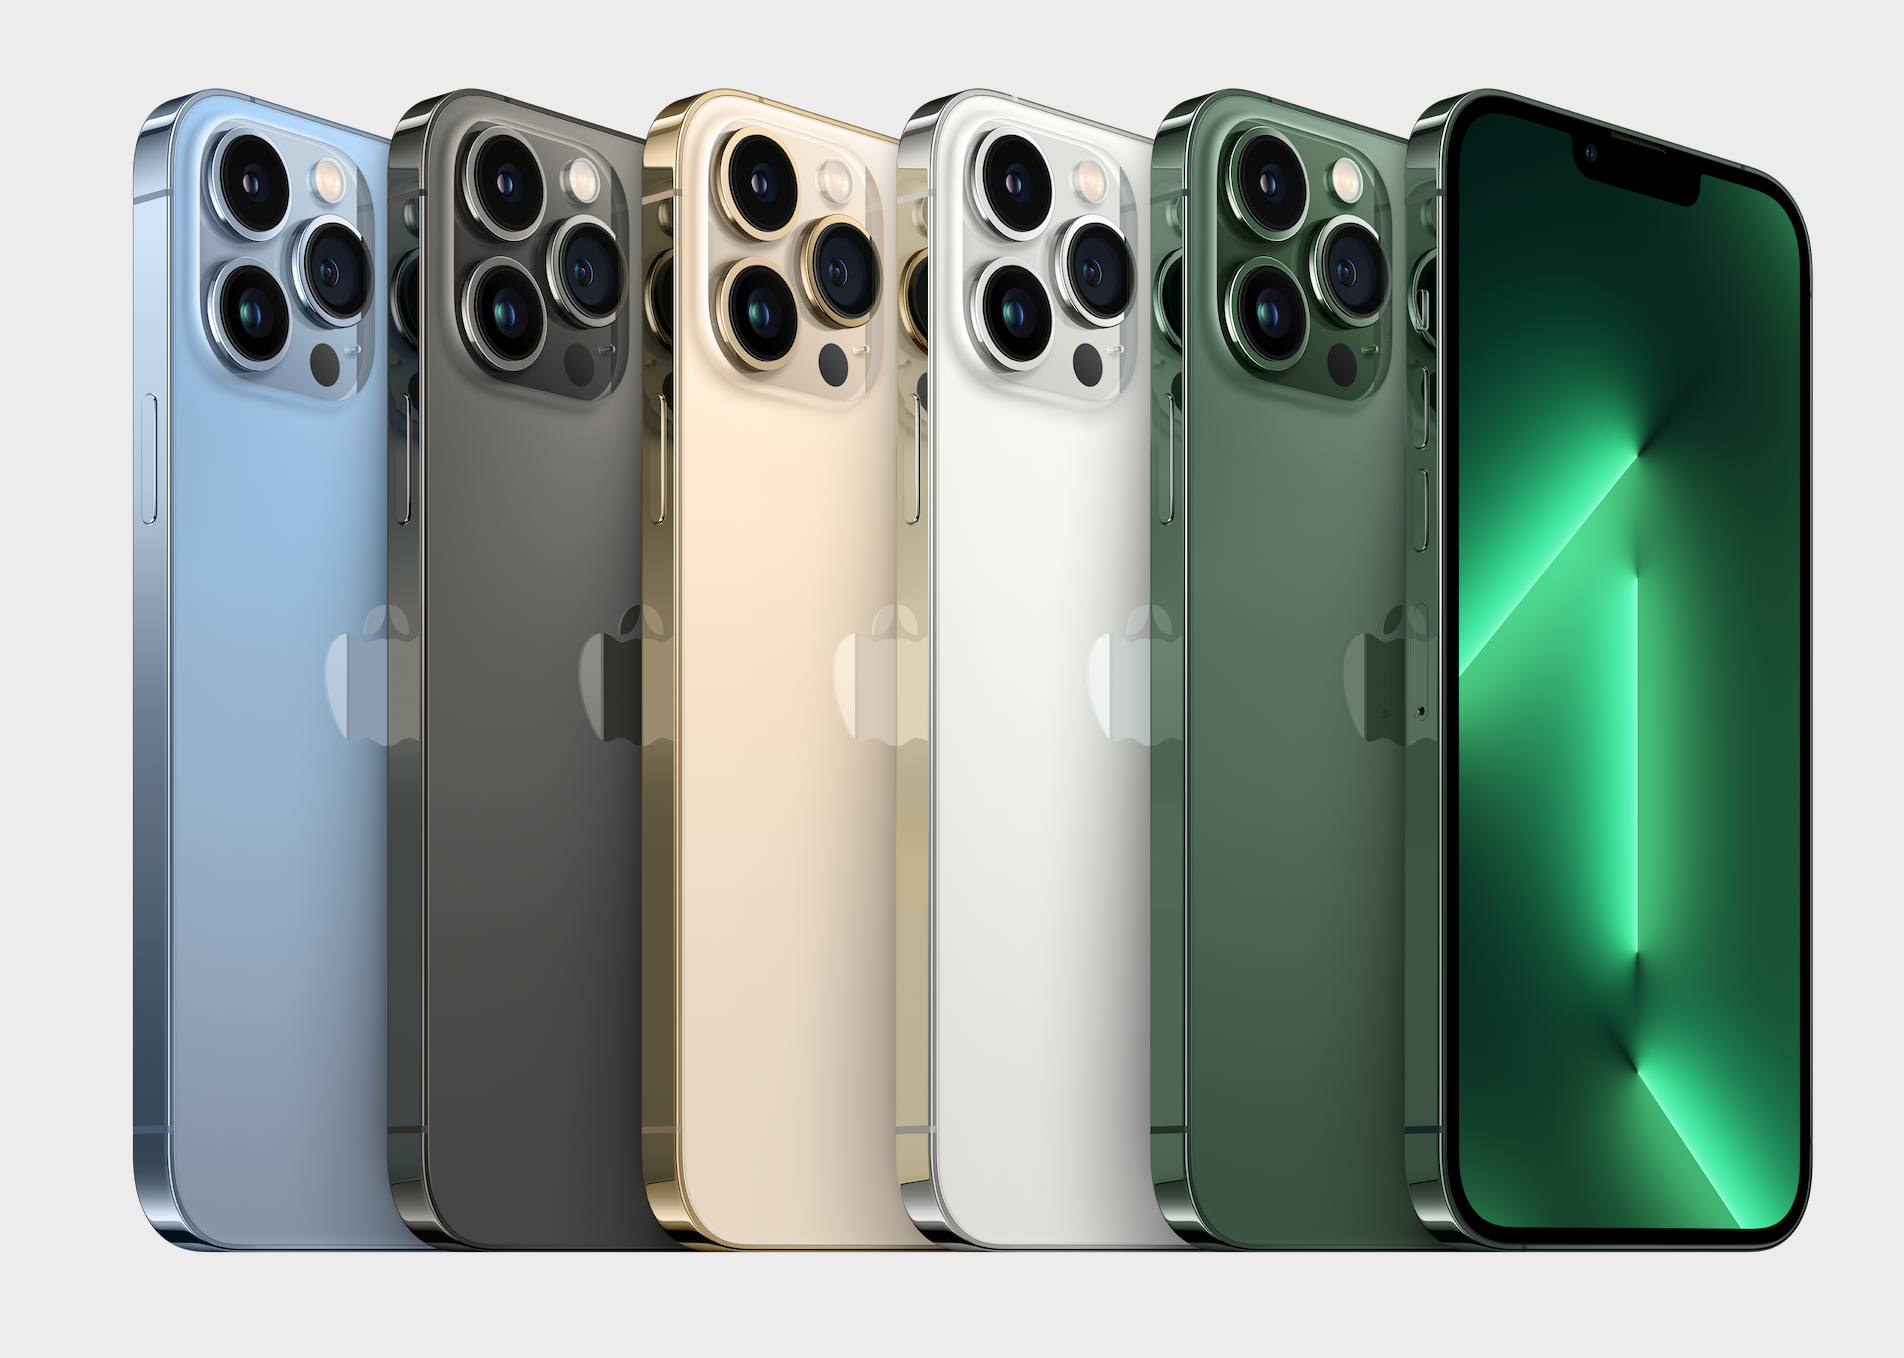 Trong khi, với dòng iPhone 13 Pro và iPhone 13 Pro Max sở hữu 5 gam màu trung tính, nhã nhặn hơn là màu bạc, màu xám, xanh Sierra, hồng và cũng có 1 màu xanh lá cây nhạt ra mắt tại sự kiện Peek Performance 2022.